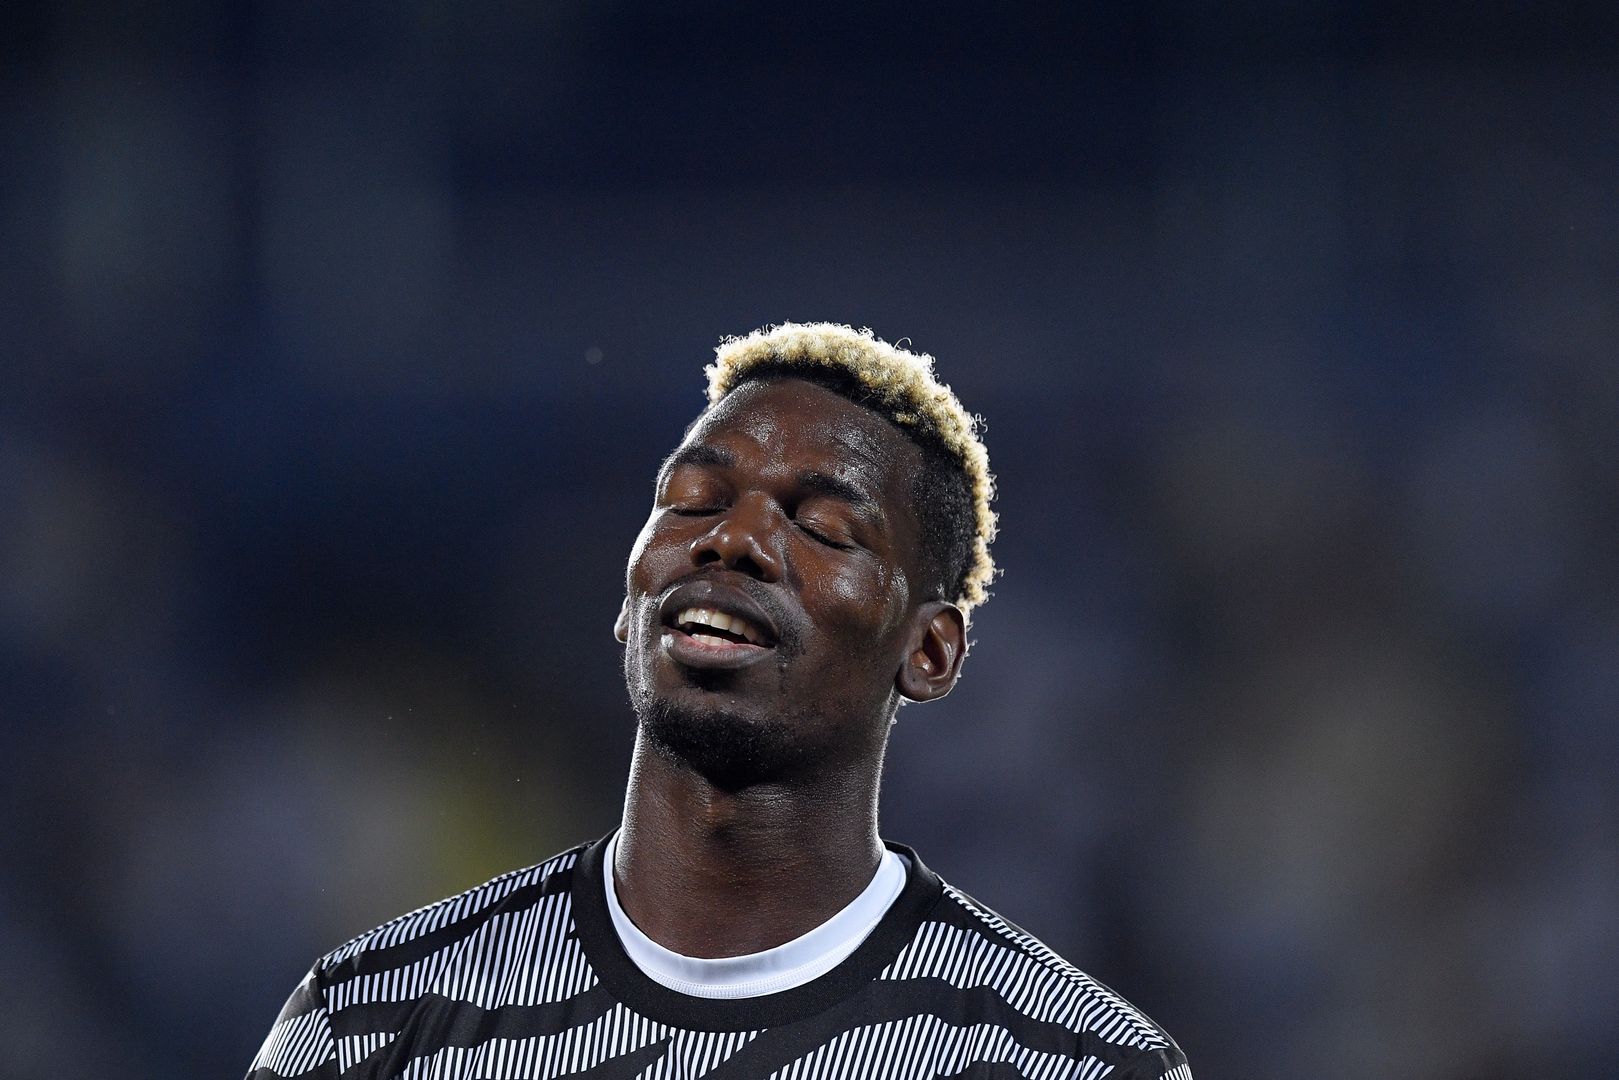 Gwiazda Juventusu złapana na dopingu. Prawnicy walczą o krótszy wyrok